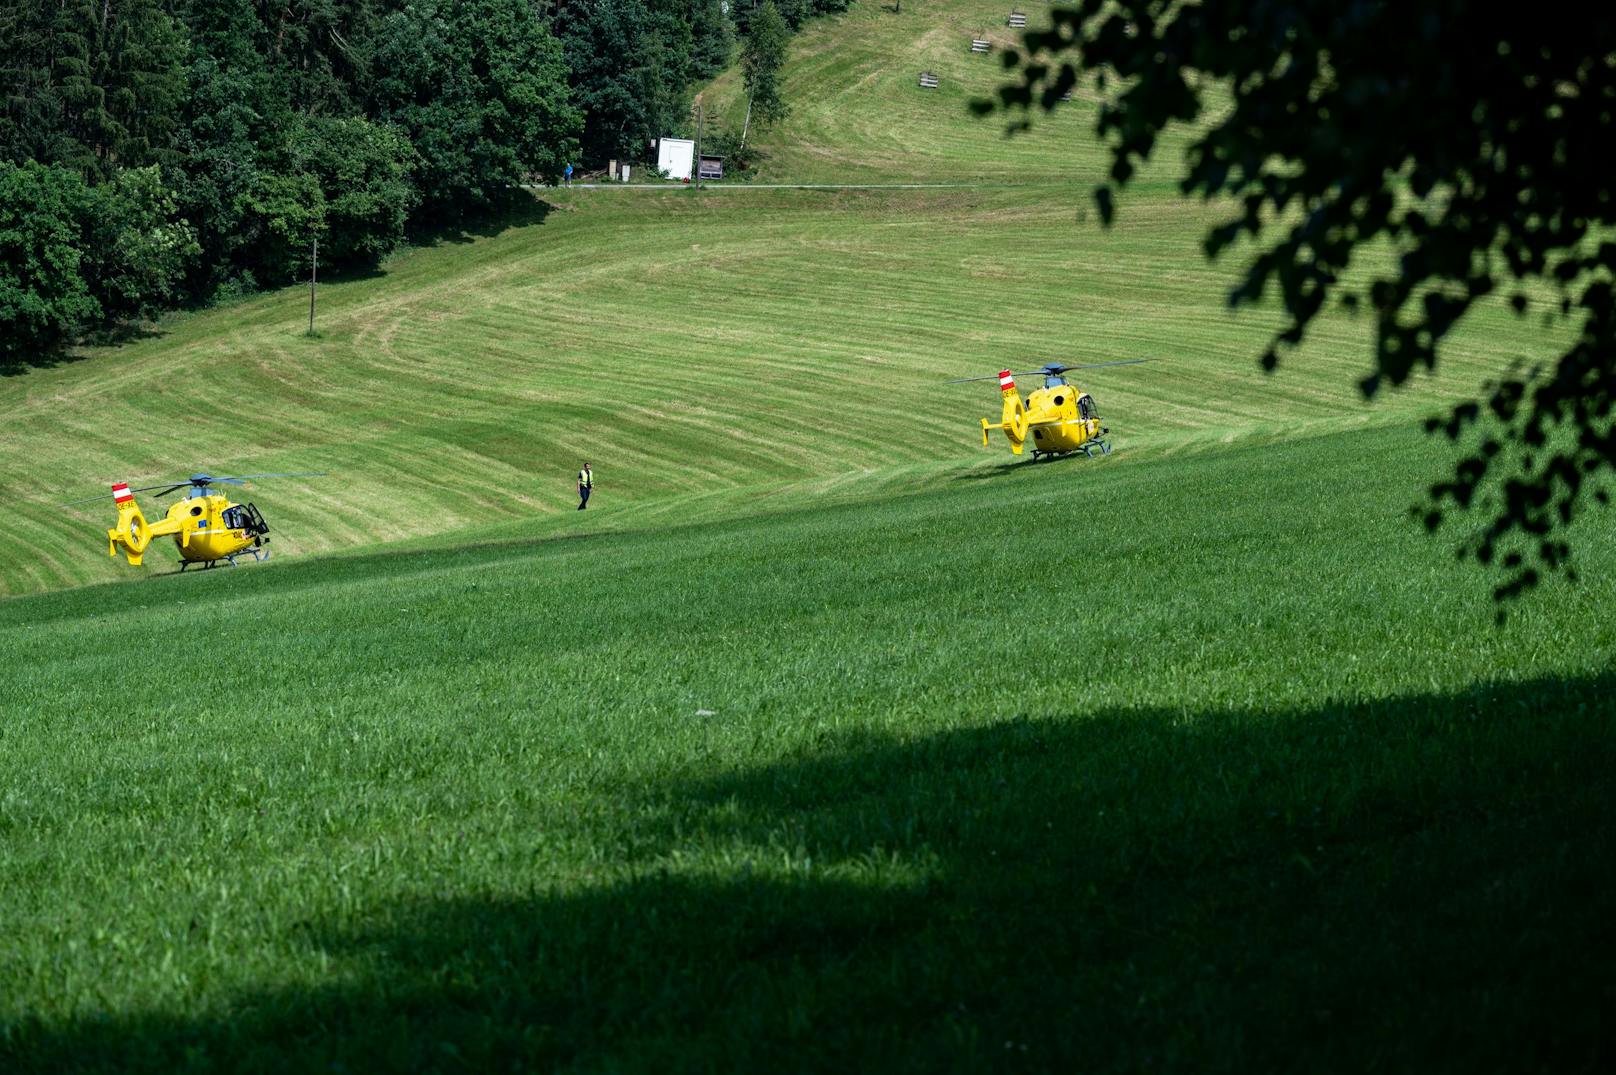 Die Helikopter landeten auf einem Feld in der Nähe des Bauernhofes.